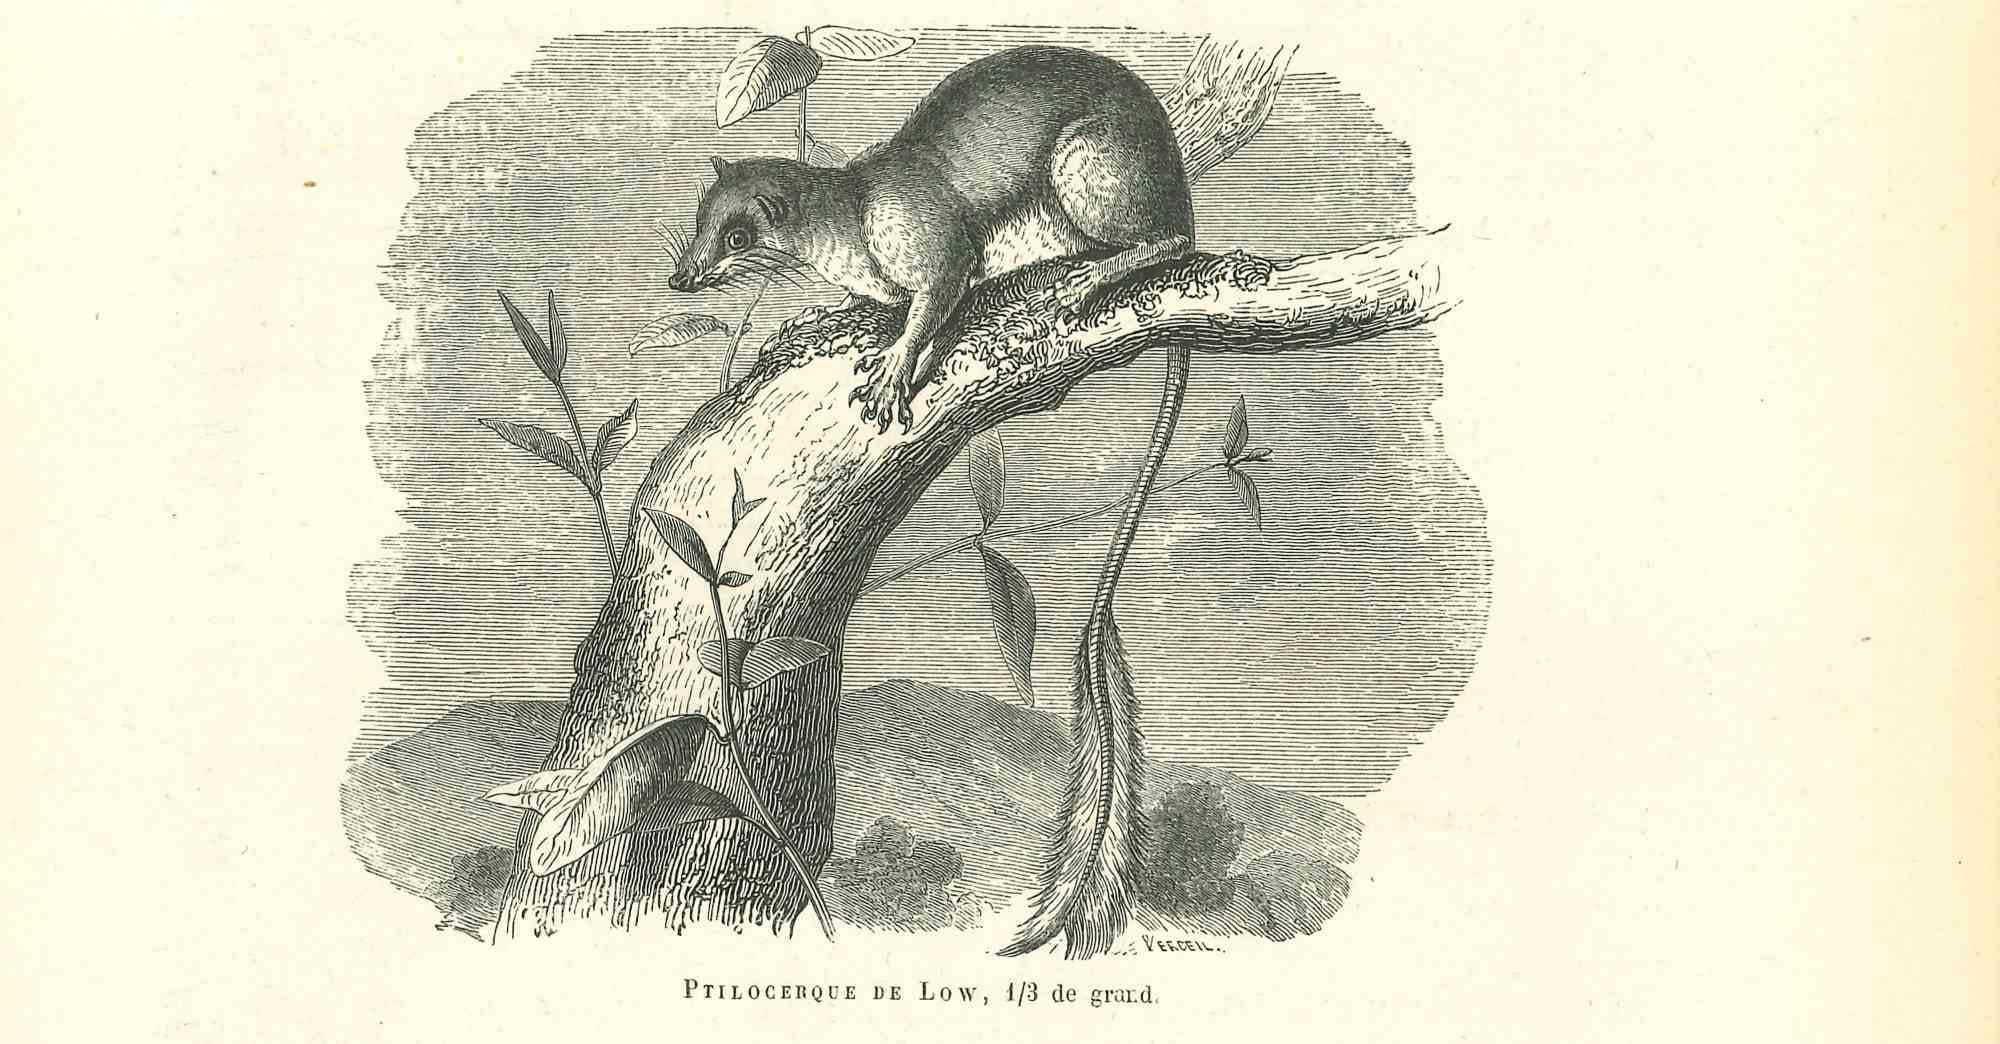 Die Maus ist eine Originallithografie auf elfenbeinfarbenem Papier, die von Paul Gervais (1816-1879) geschaffen wurde. Das Kunstwerk stammt aus der Serie "Les Trois Règnes de la Nature" und wurde 1854 veröffentlicht.

Gute Bedingungen.

Auf der